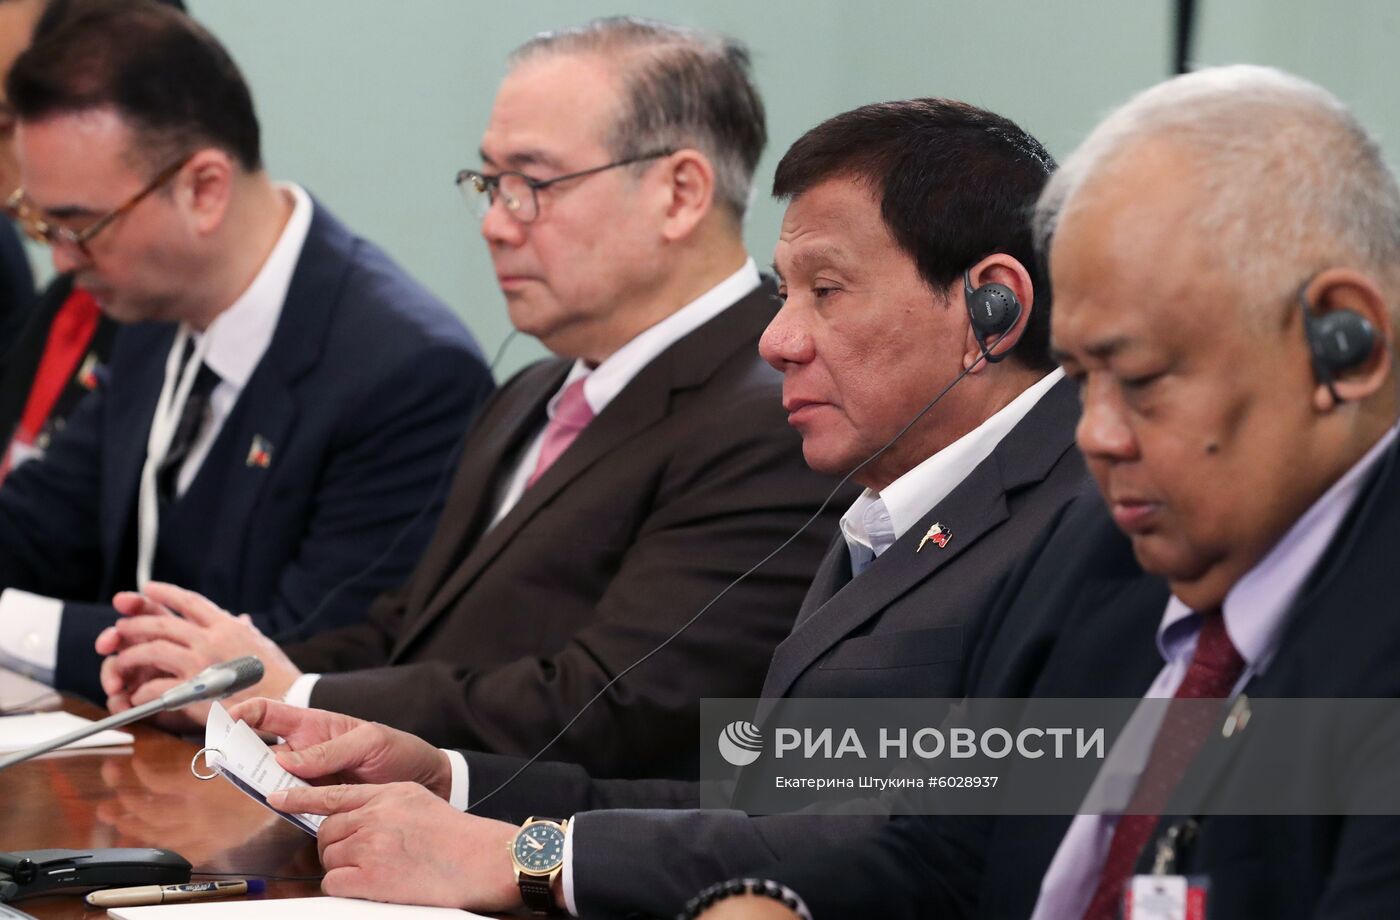 Премьер-министр РФ Д. Медведев встретился с президентом Филиппин Р. Дутерте